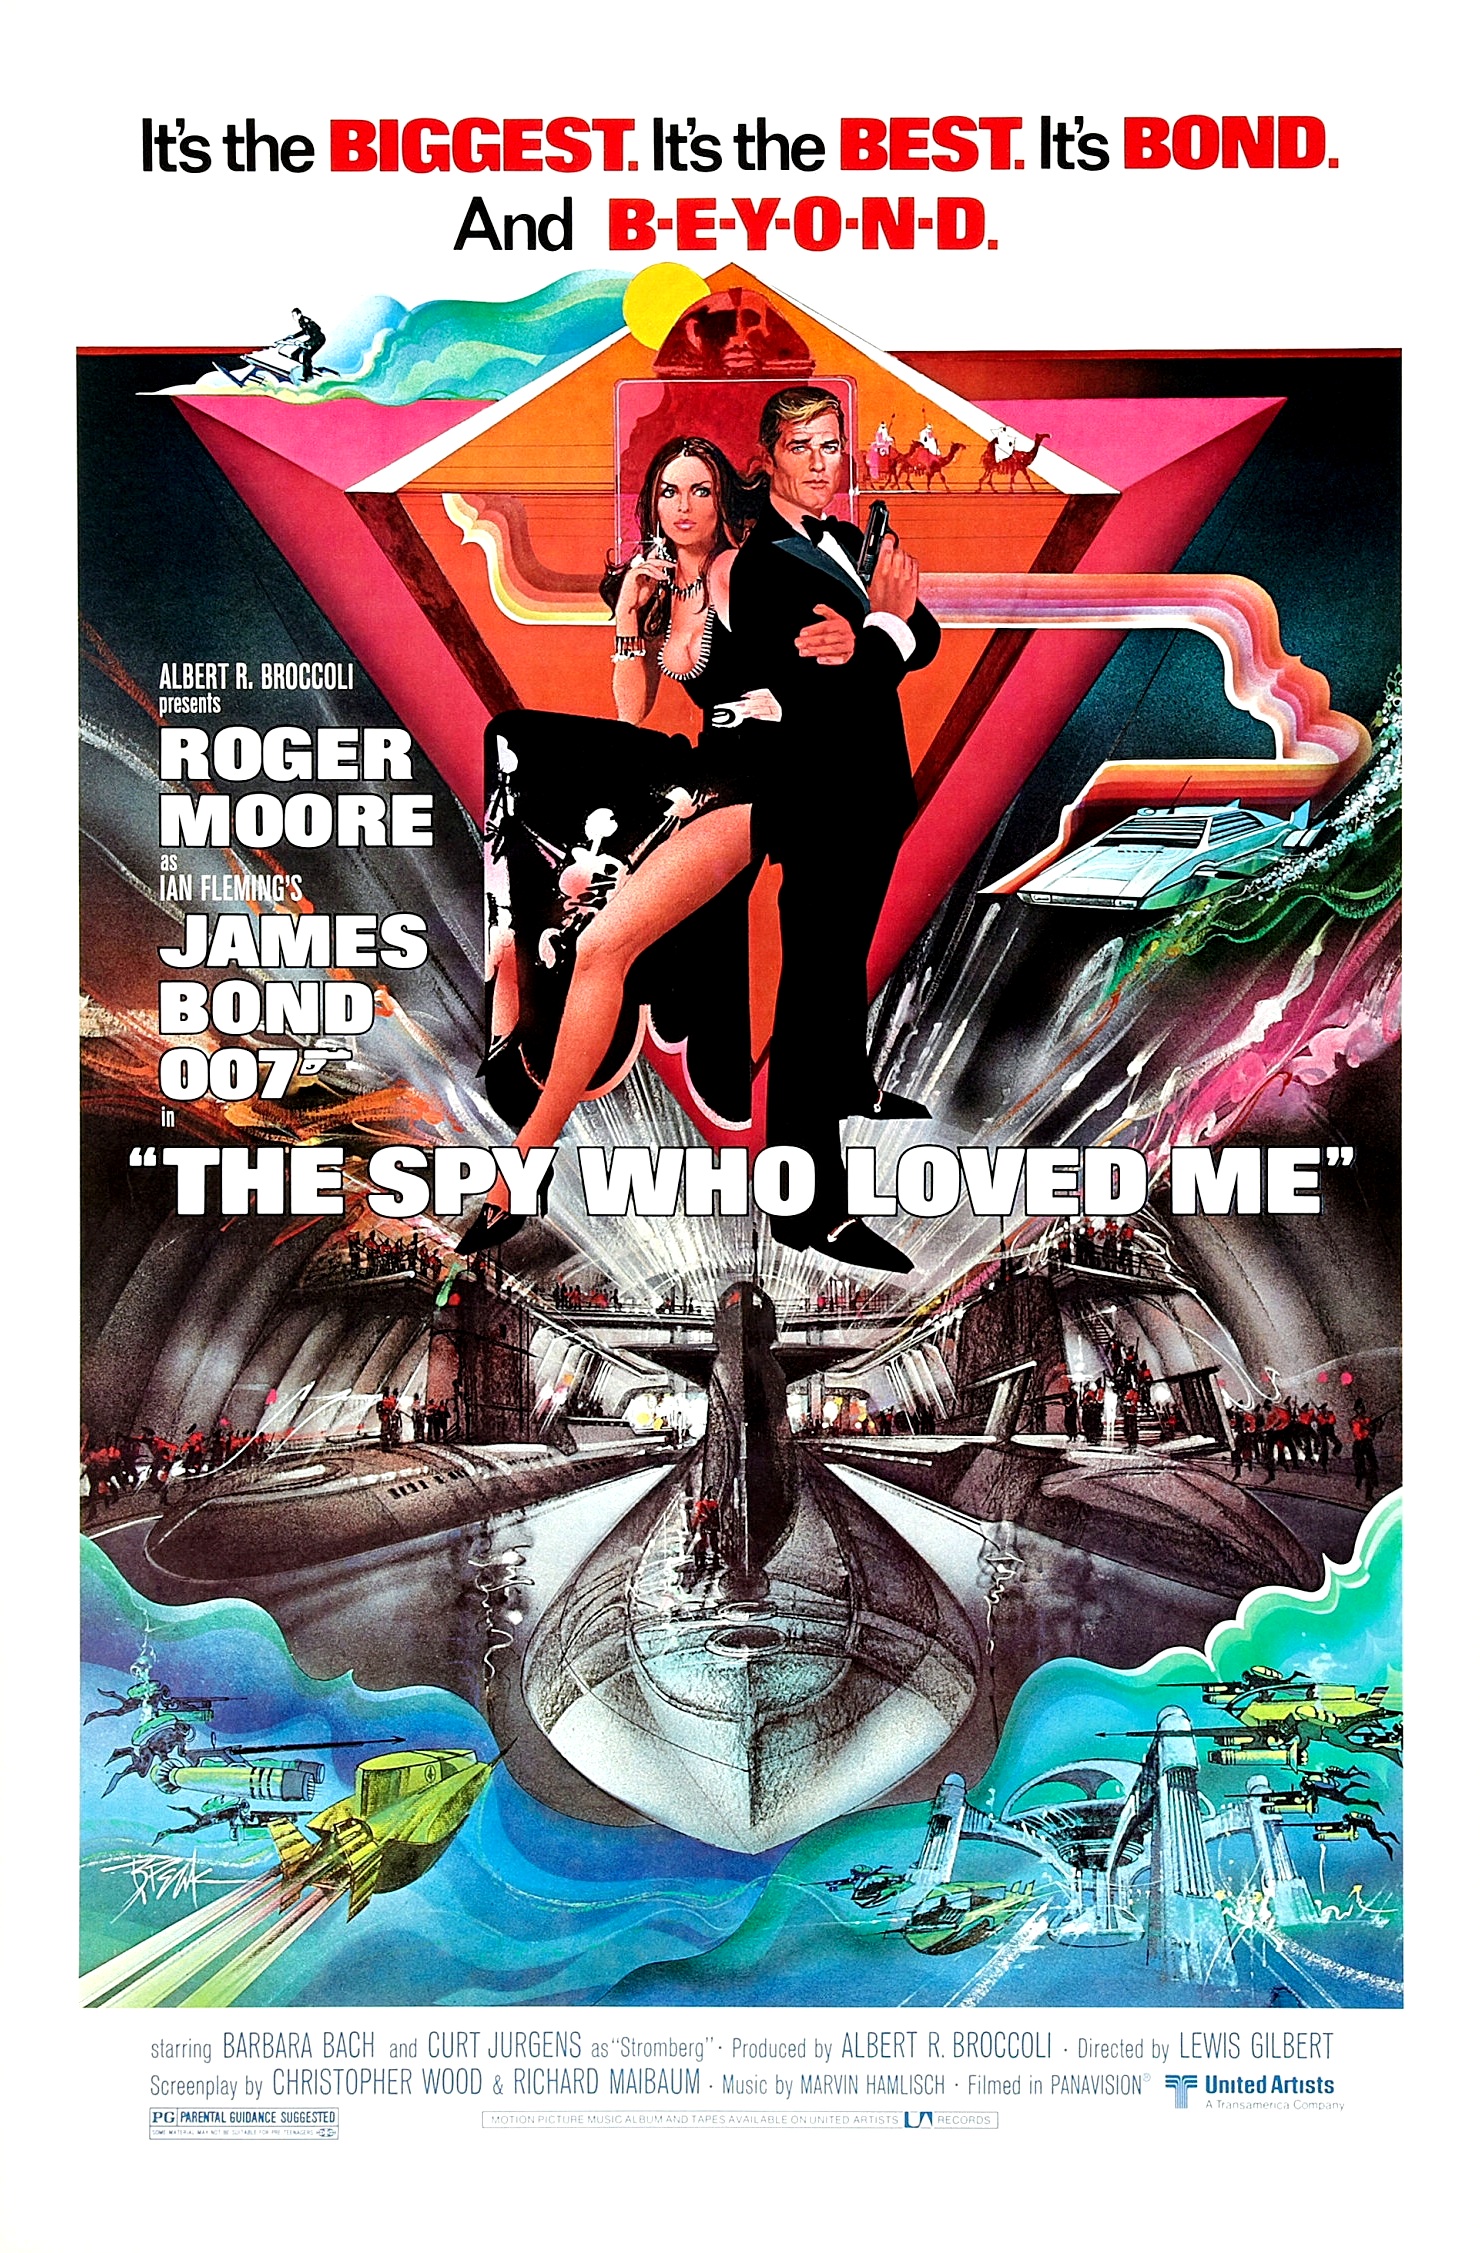 ดูหนังออนไลน์ฟรี JAMES BOND 007 THE SPY WHO LOVED ME (1977) เจมส์ บอนด์ 007 ภาค 10: พยัคฆ์ร้ายสุดที่รัก